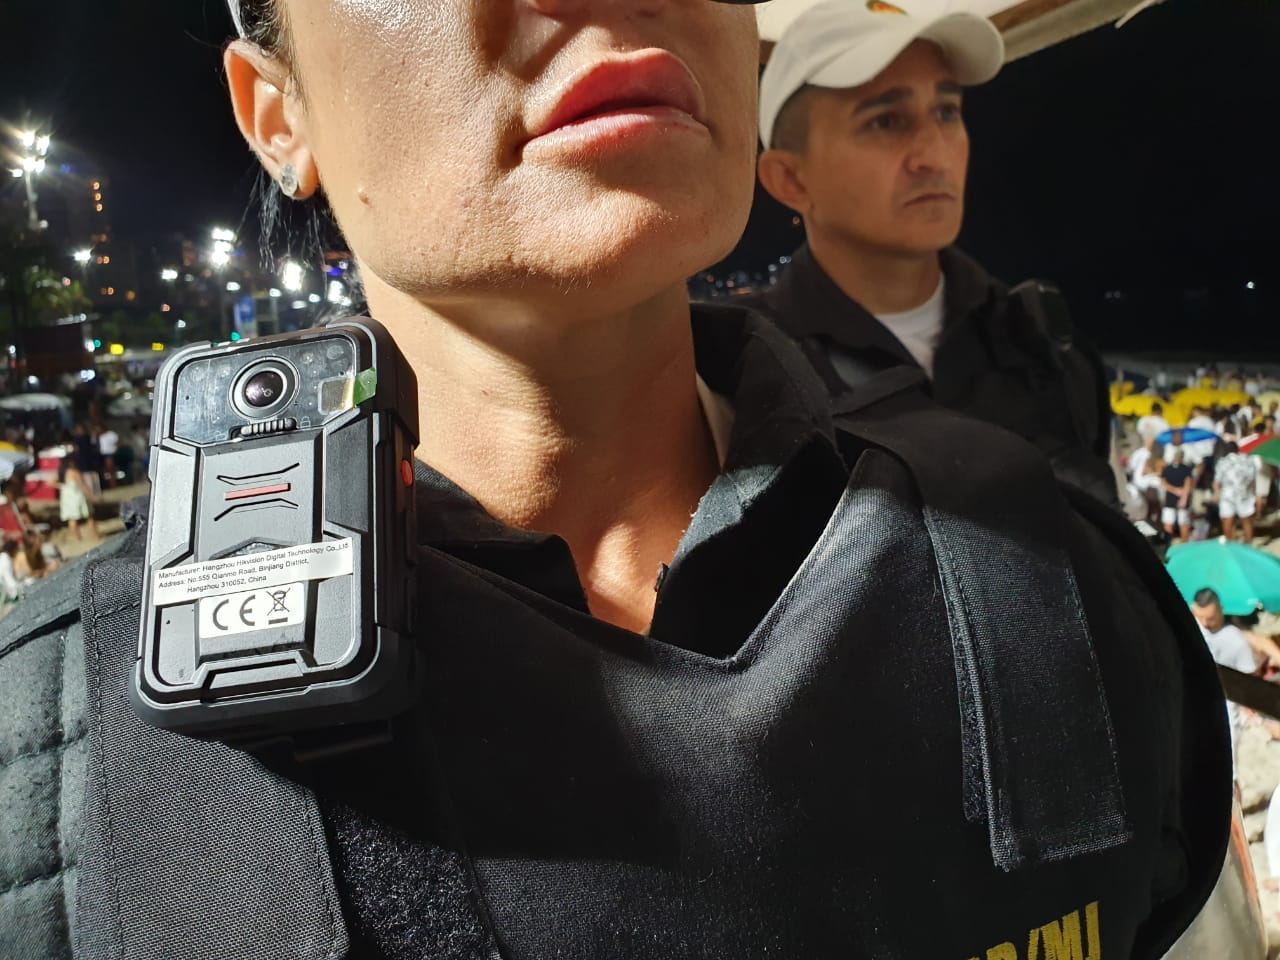 Policiais vão começar a usar câmeras nos uniformes no dia 16 de maio